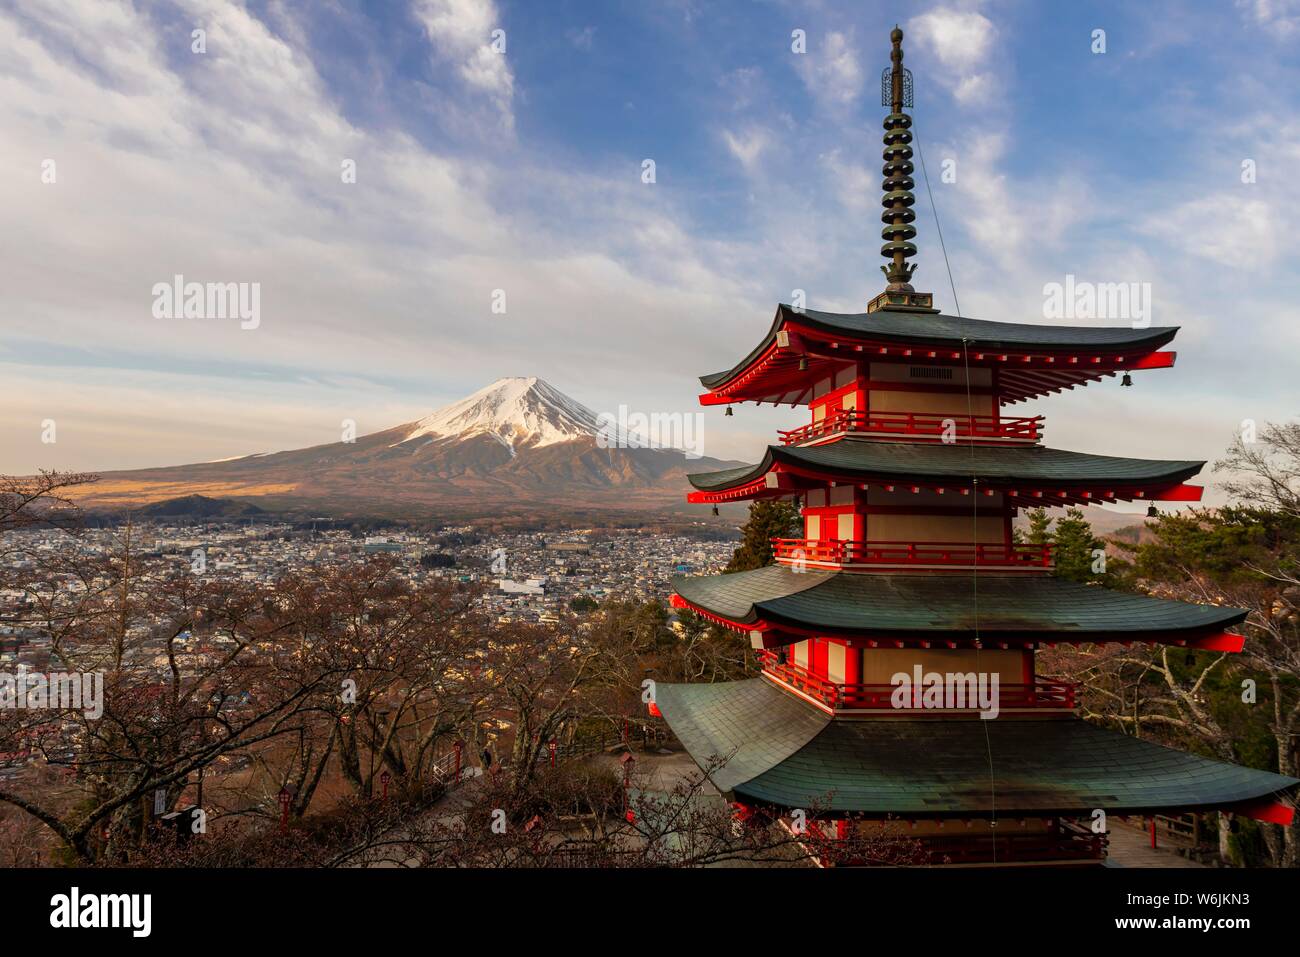 La pagoda de cinco pisos, Fujiyoshida Chureito Pagoda, con vistas a la ciudad y el volcán del Monte Fuji, prefectura de Yamanashi, Japón Foto de stock